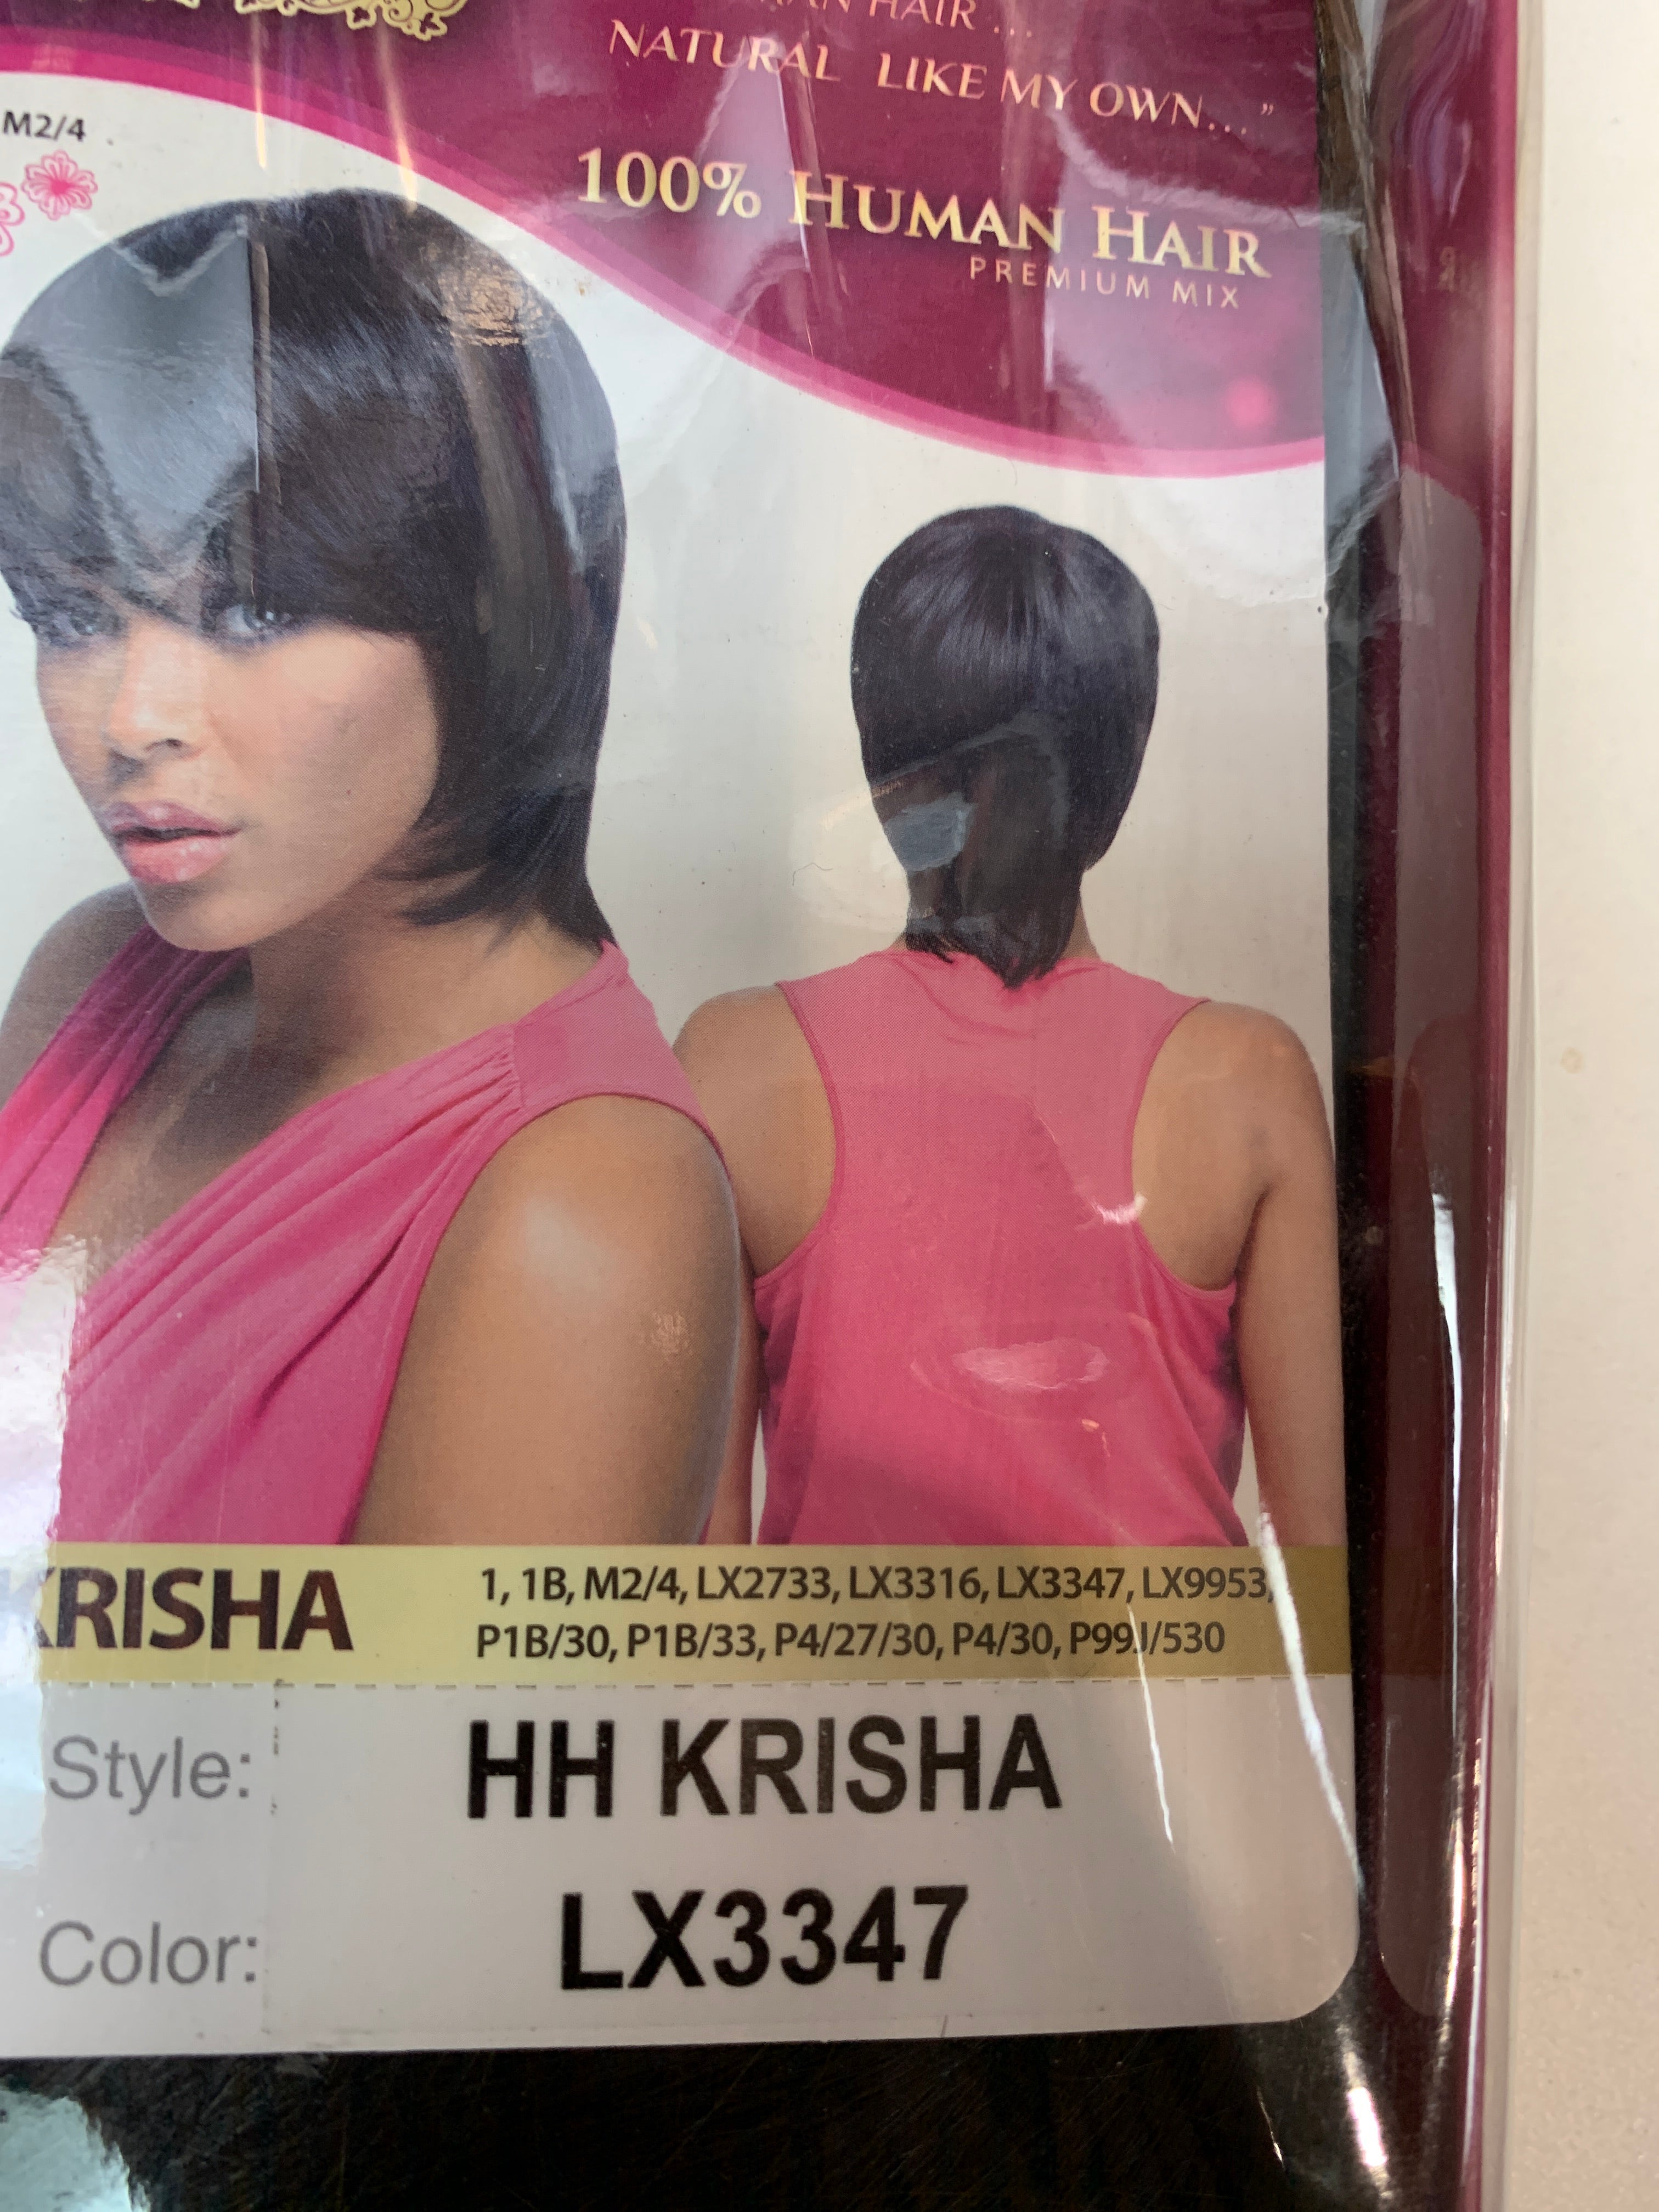 It’s a wig hh Krisha